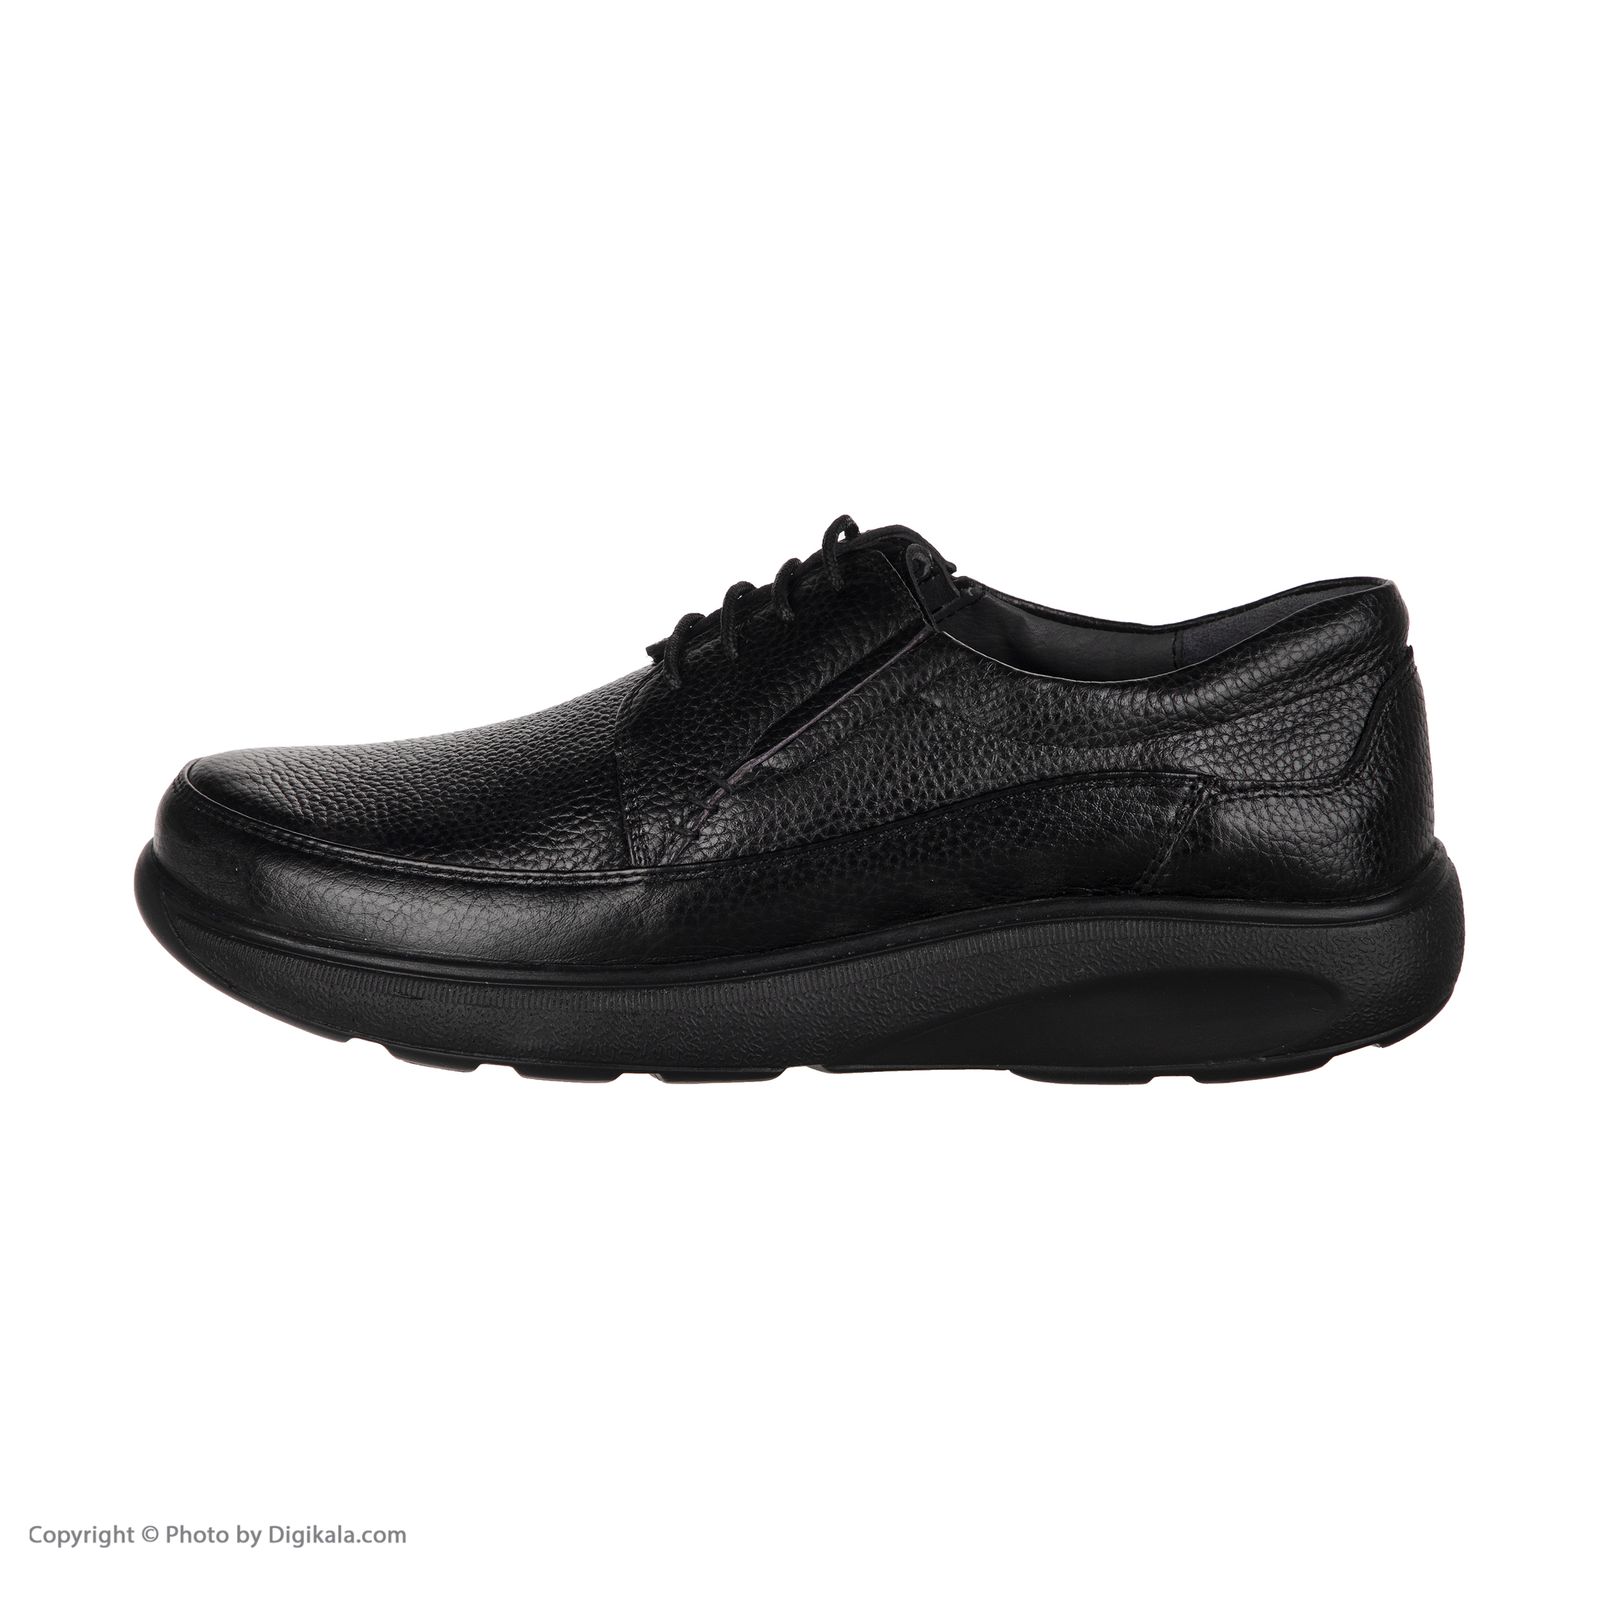  کفش روزمره مردانه سوته مدل 4931B503101 -  - 3